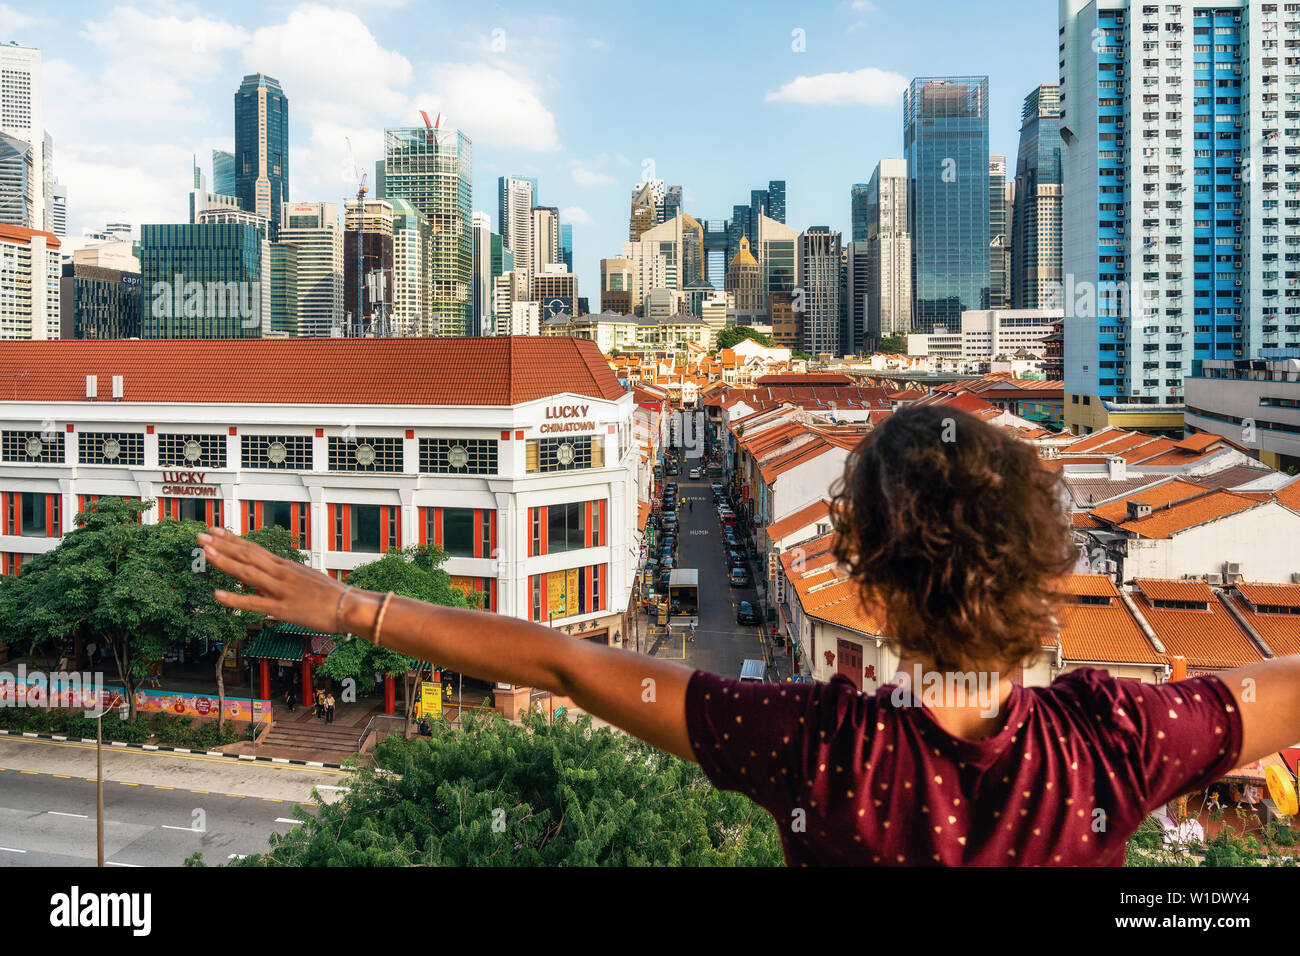 Chinatown, Singapore - 8 Febbraio 2019: giovane donna felice sorge torna alla telecamera con le mani alzate e gode di vista aerea di Chinatown con tetti rossi Foto Stock